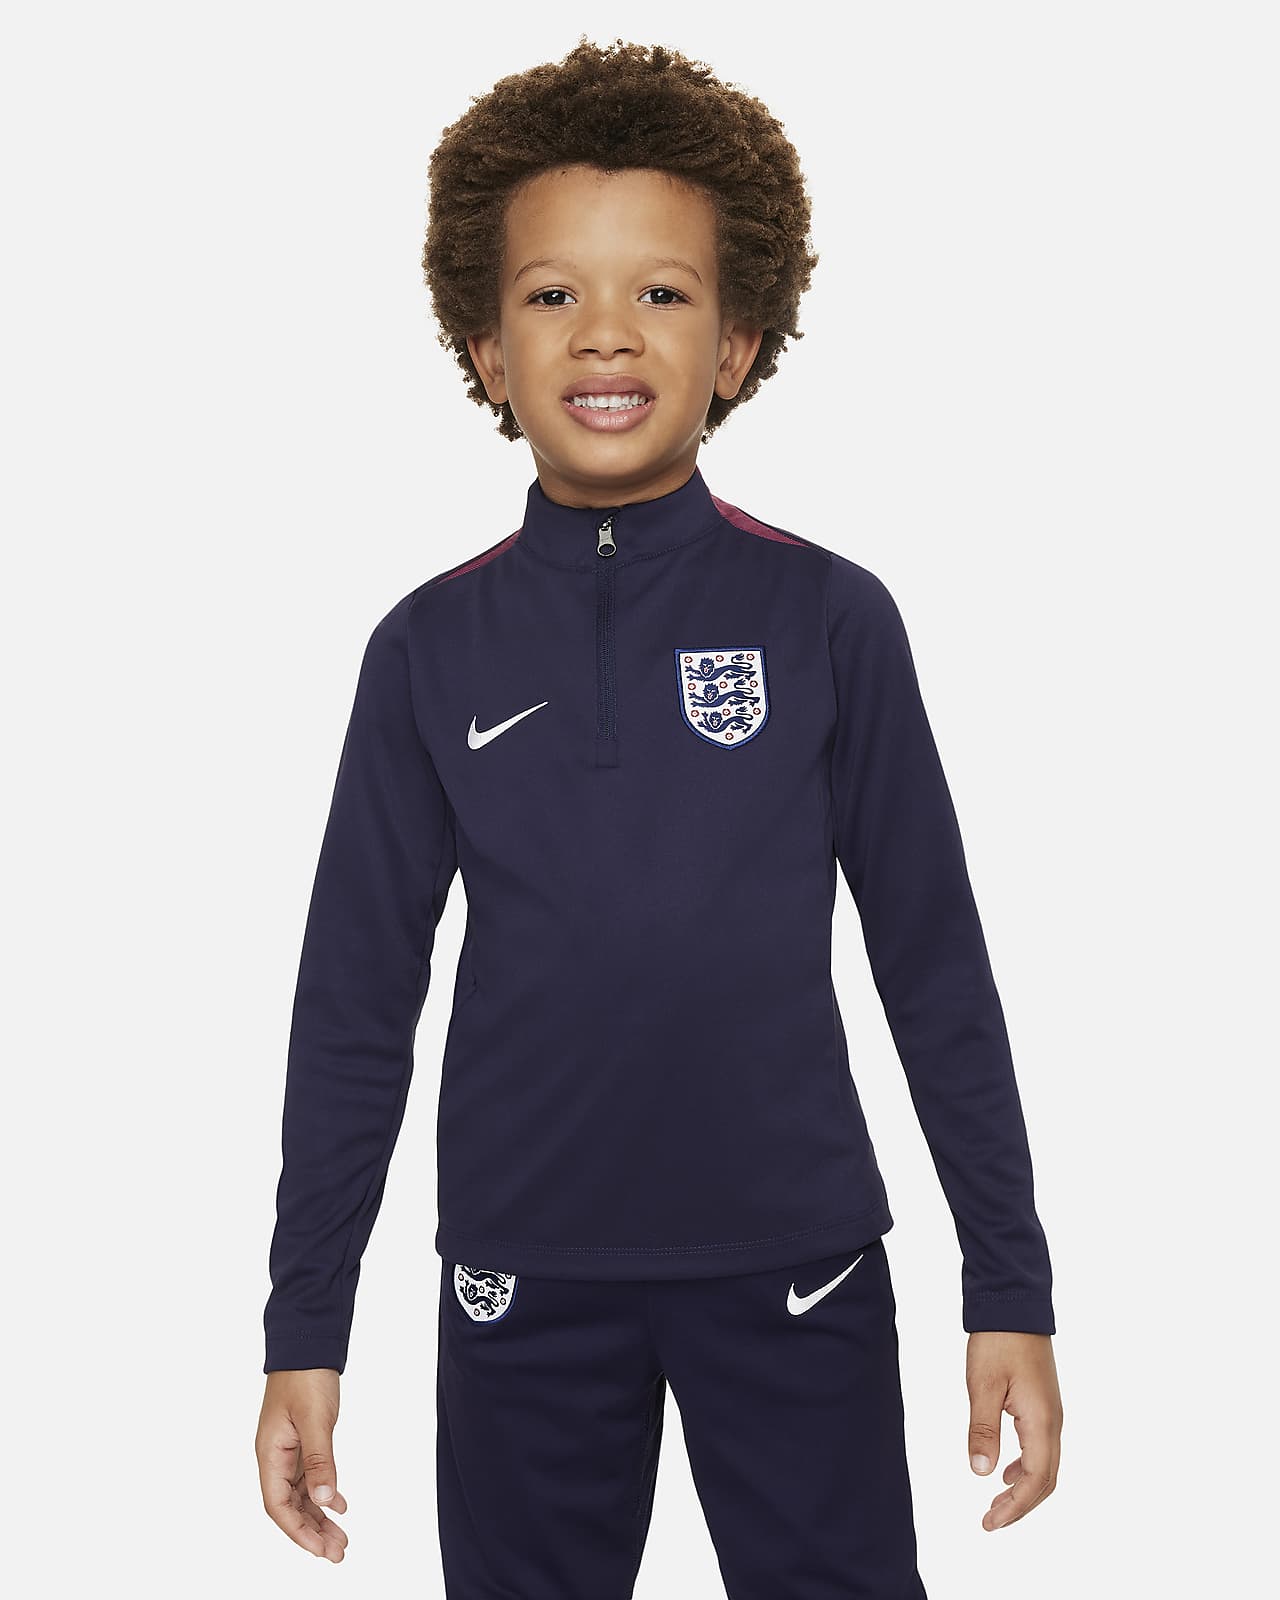 Ποδοσφαιρική μπλούζα προπόνησης Nike Dri-FIT Αγγλία Academy Pro για μικρά παιδιά